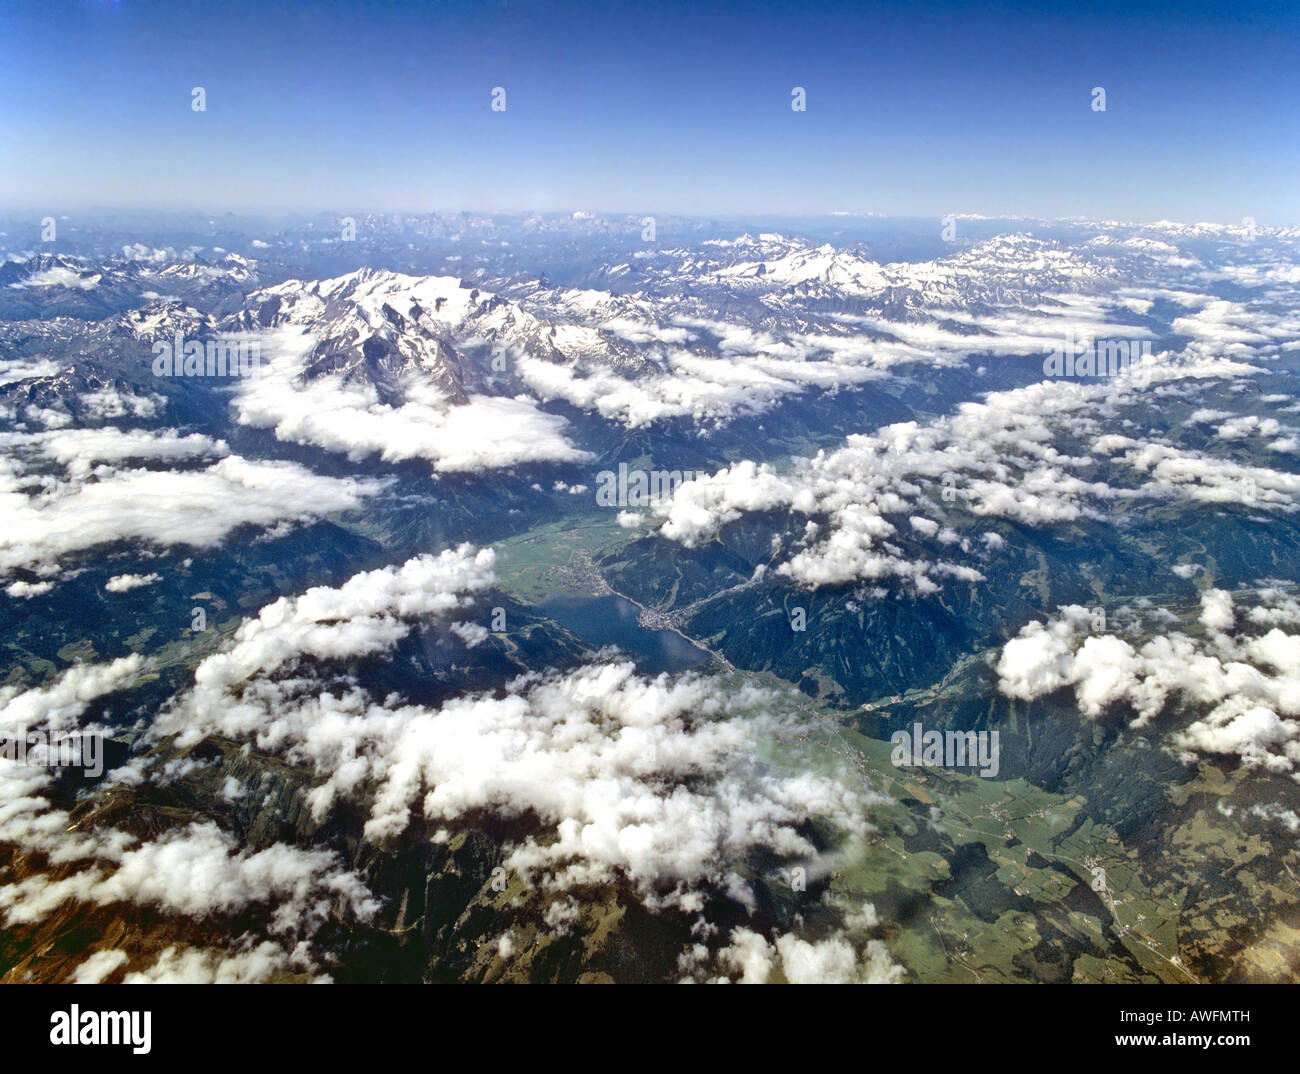 Riprese aeree, Tennen gamma, Dientener Mtns. (Di seguito), Zell am See (centrale), Hohe Tauern Range, del Pinzgau, Mt. Grossglockner e Mt. Foto Stock